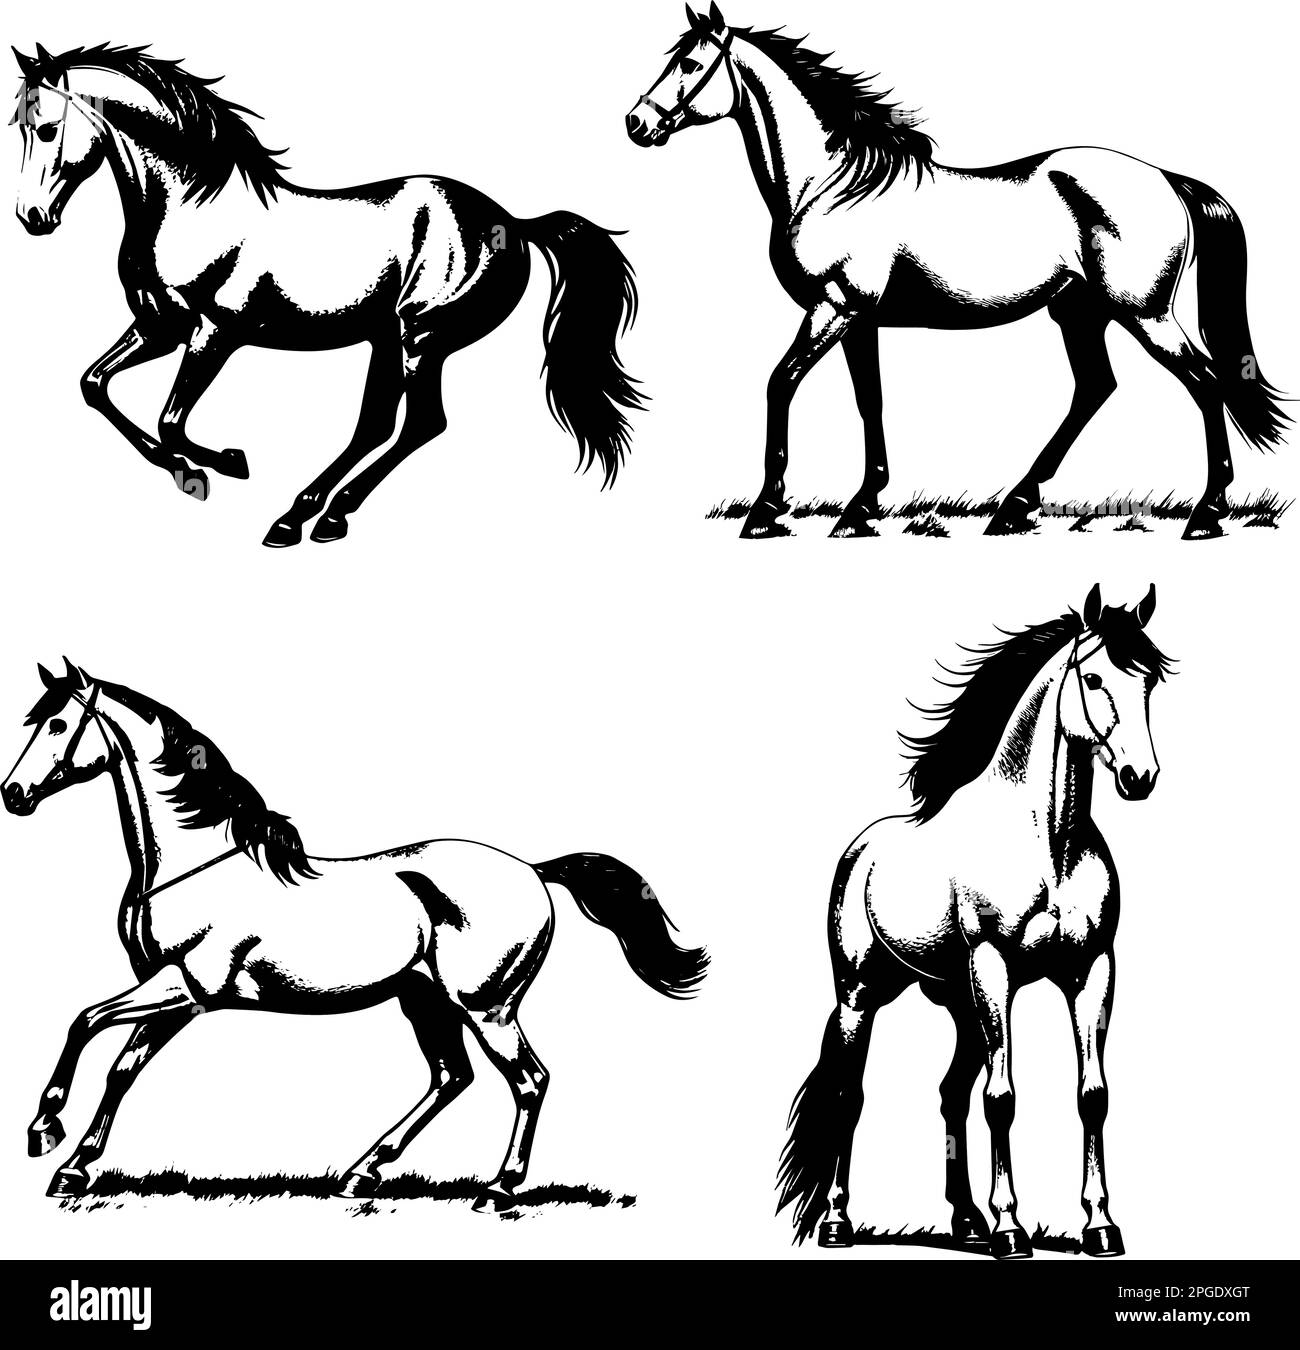 Immagine vettoriale dei cavalli. Illustrazione di cavalli vintage. Illustrazione Vettoriale